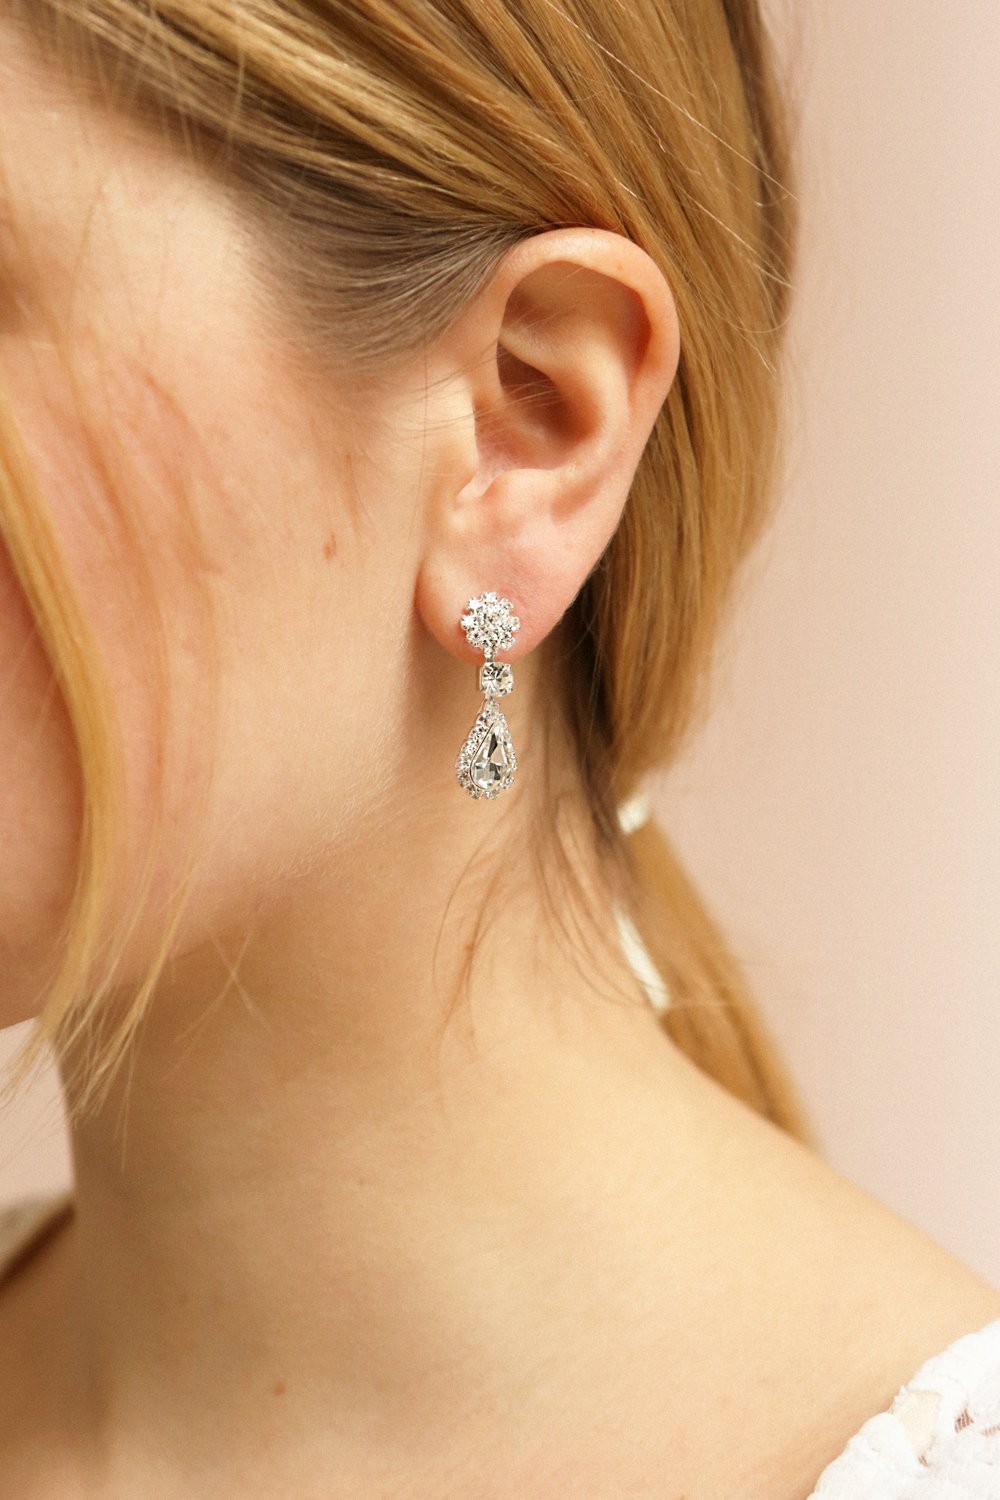 Henata Silver Pendant Earrings w/ Crystal | Boutique 1861 on model